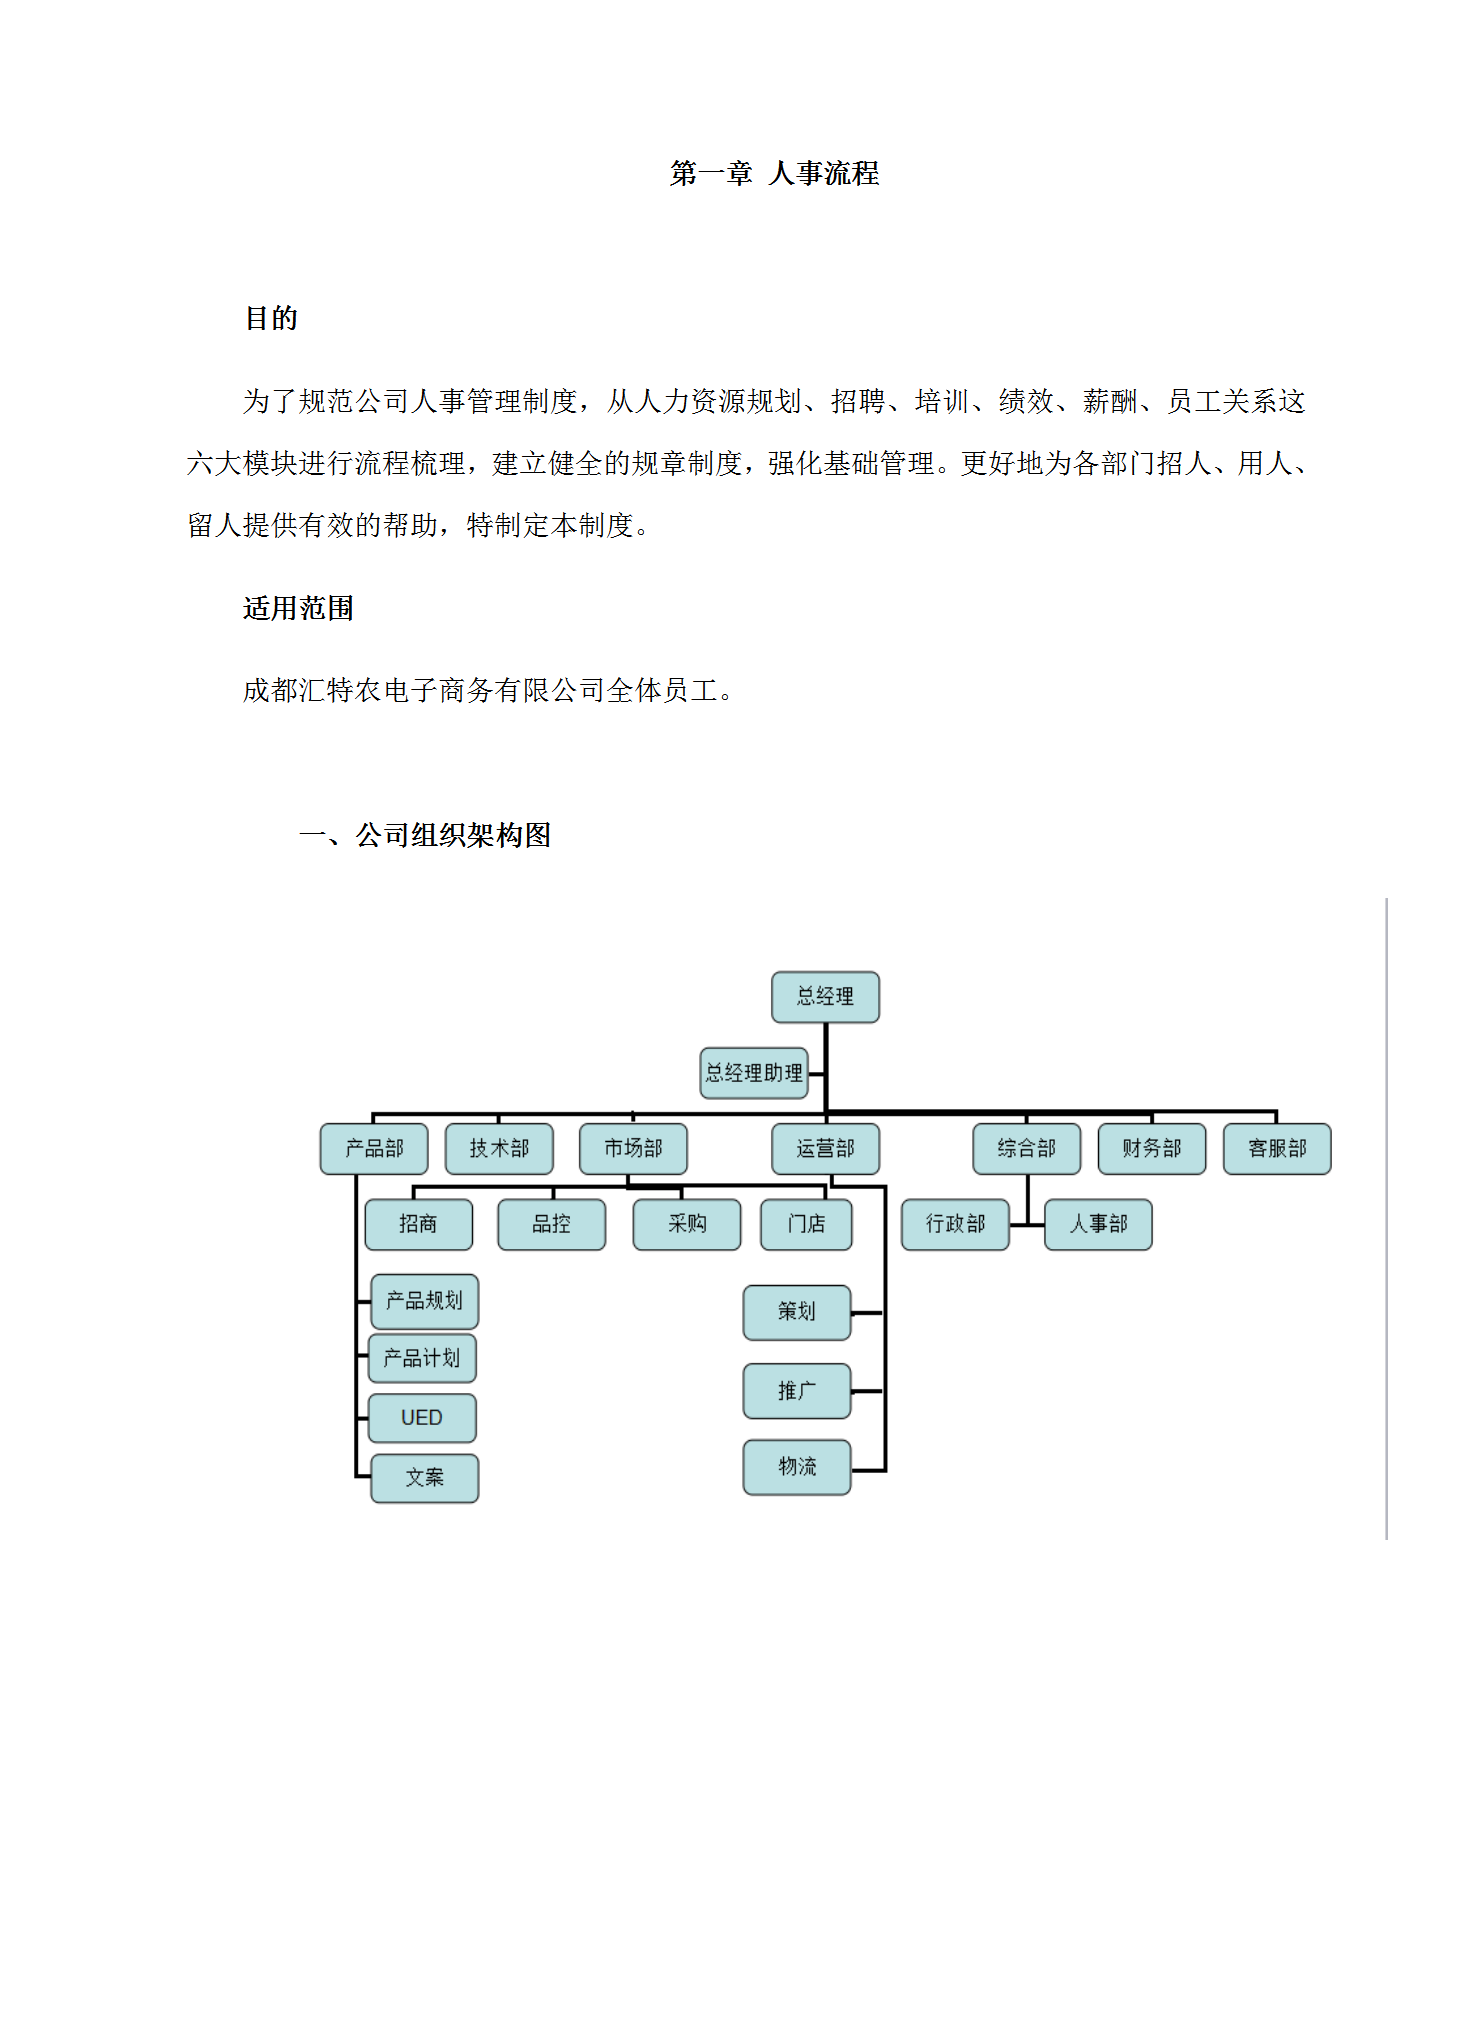 某电子商务有限公司日常人事管理制度汇编word模板-2